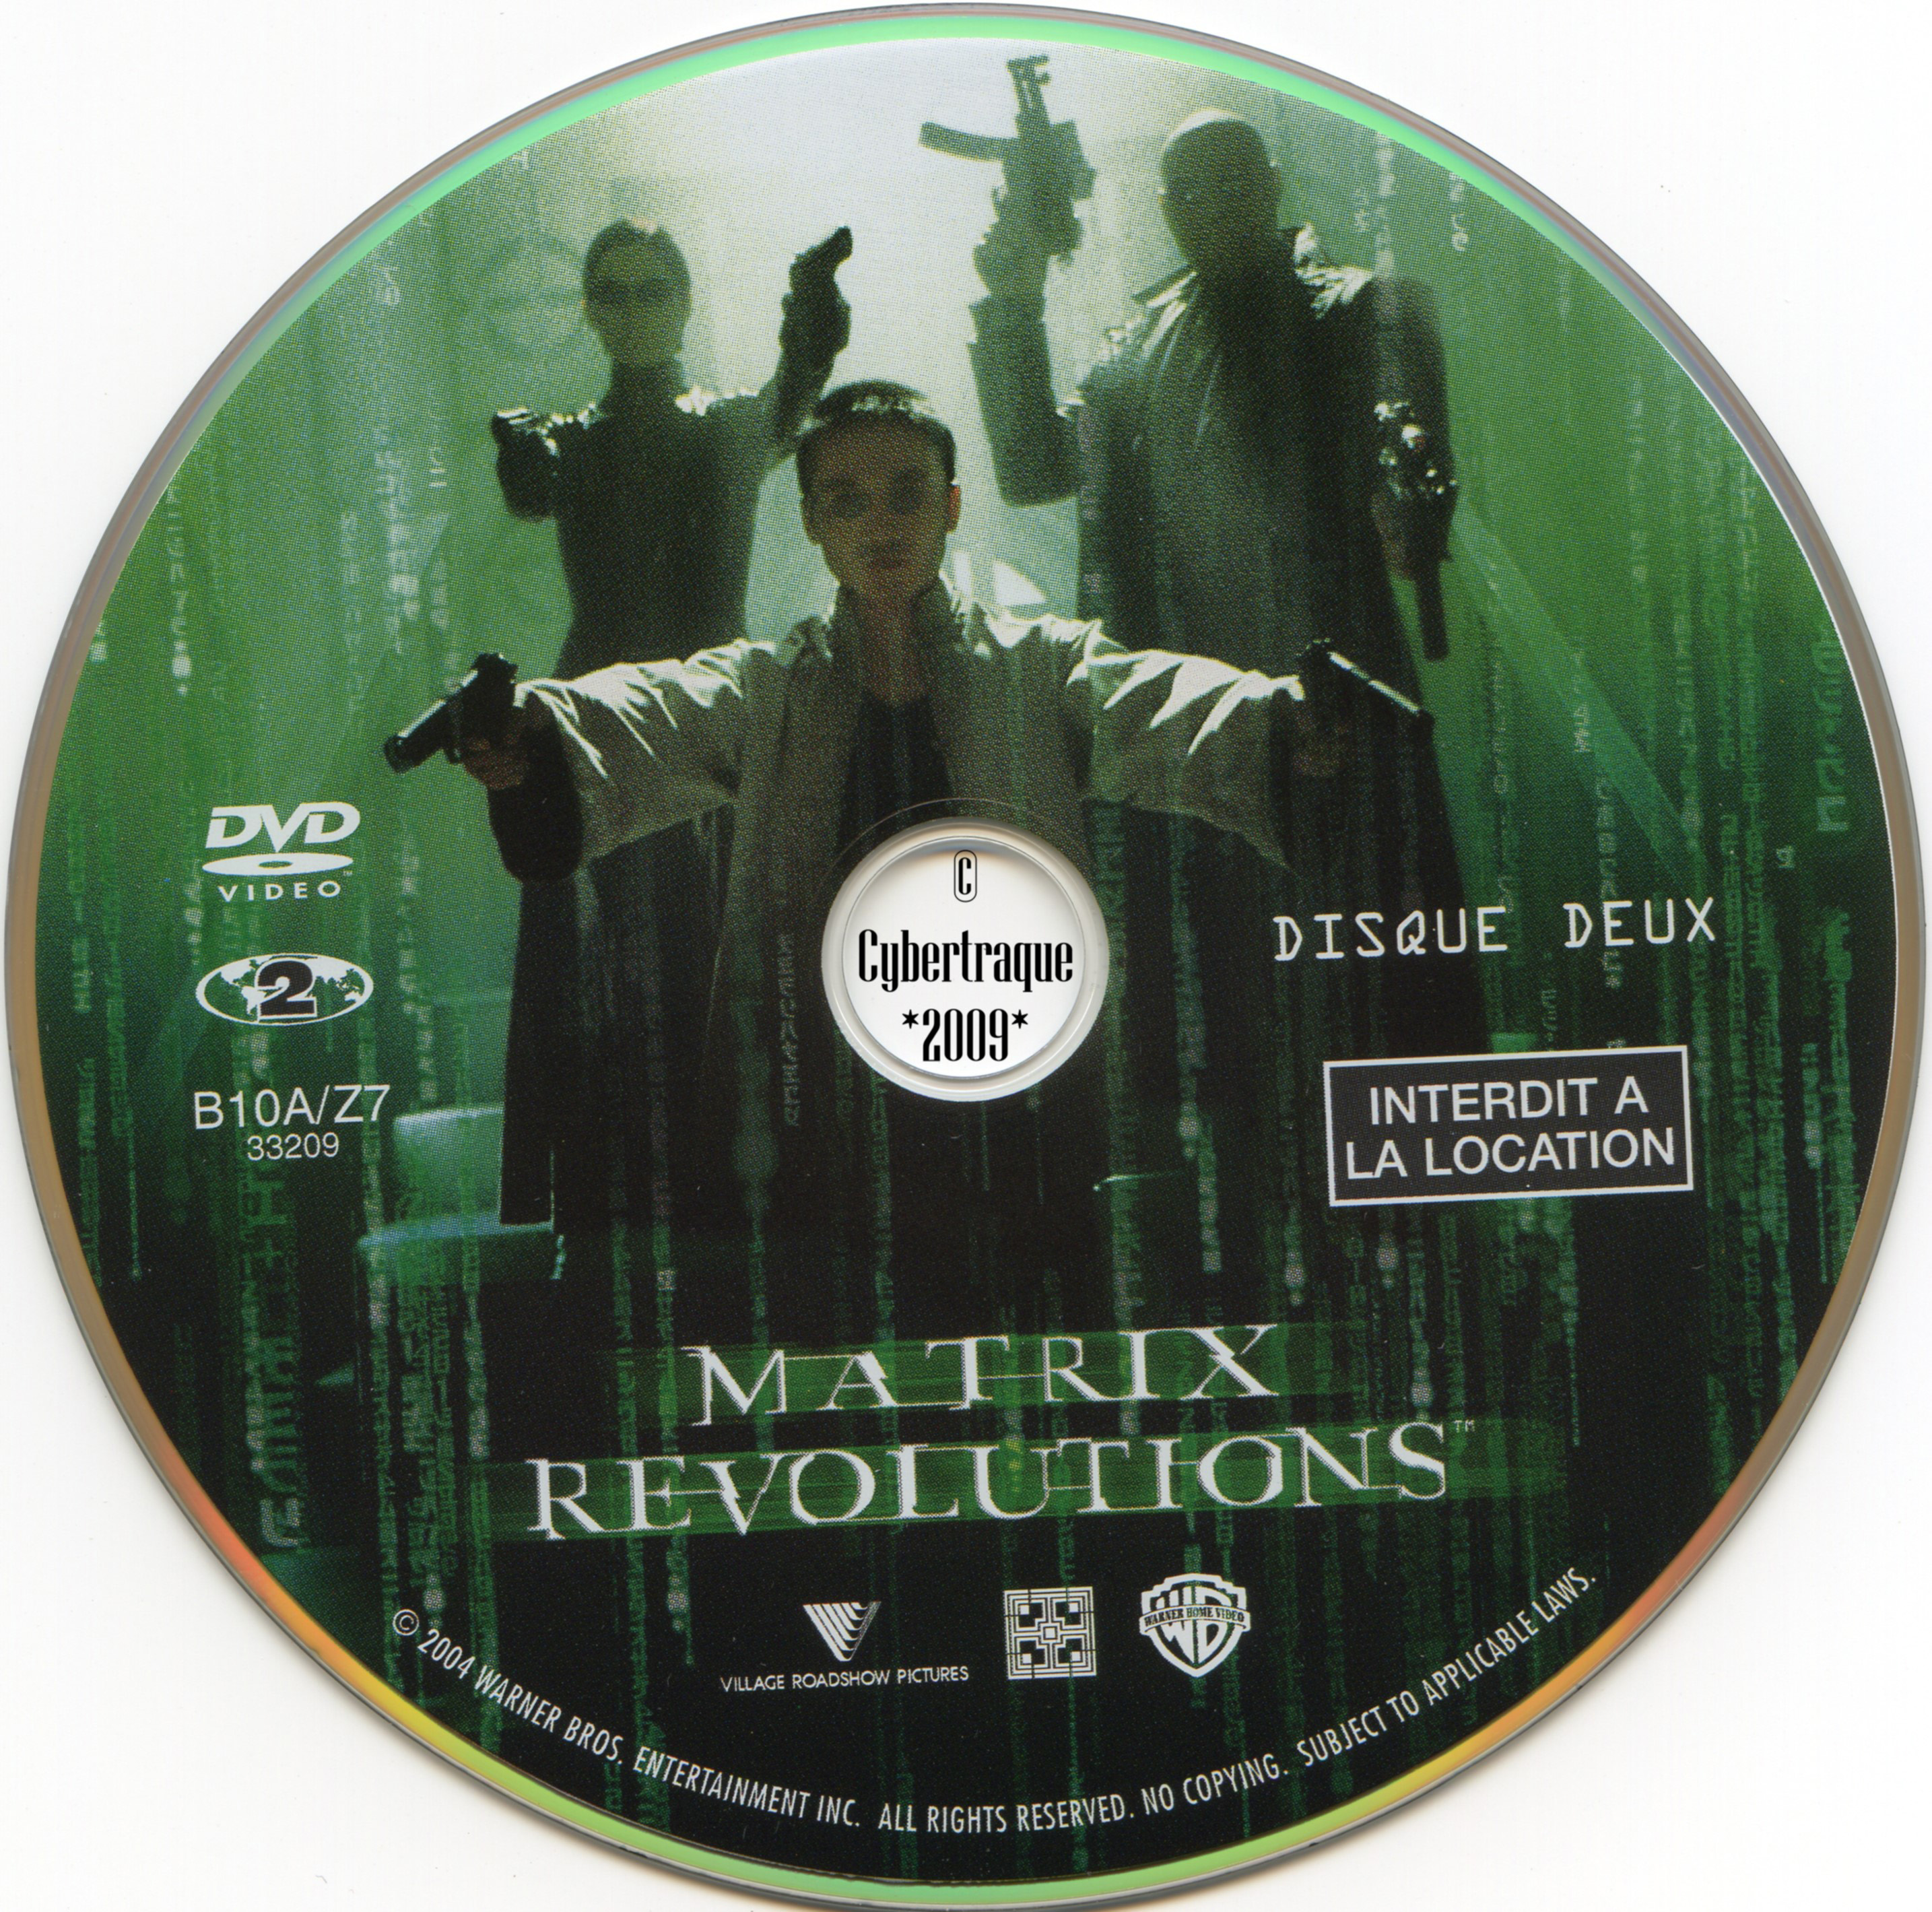 Matrix revolutions DISC 2